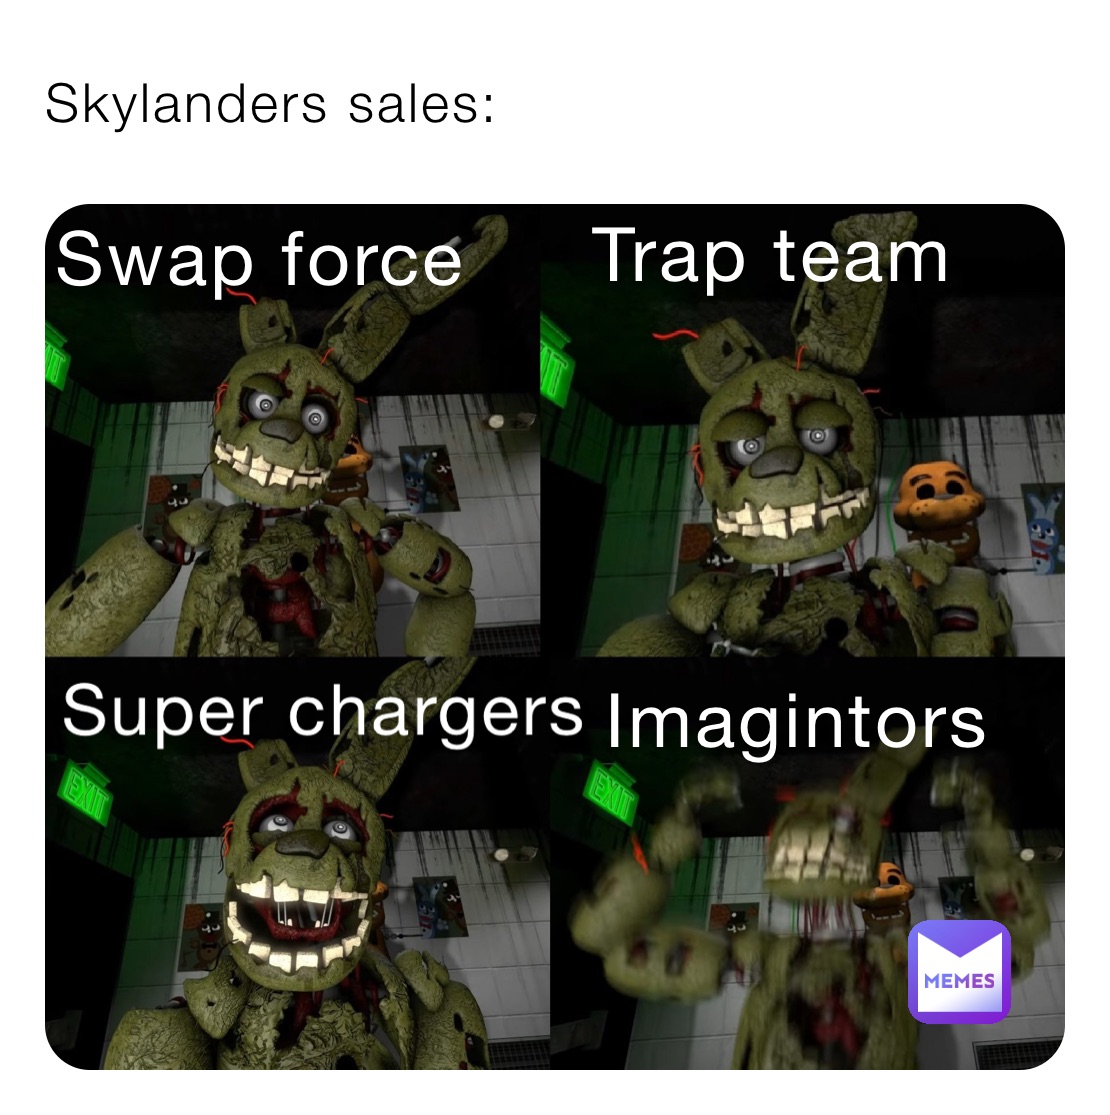 Skylanders sales: